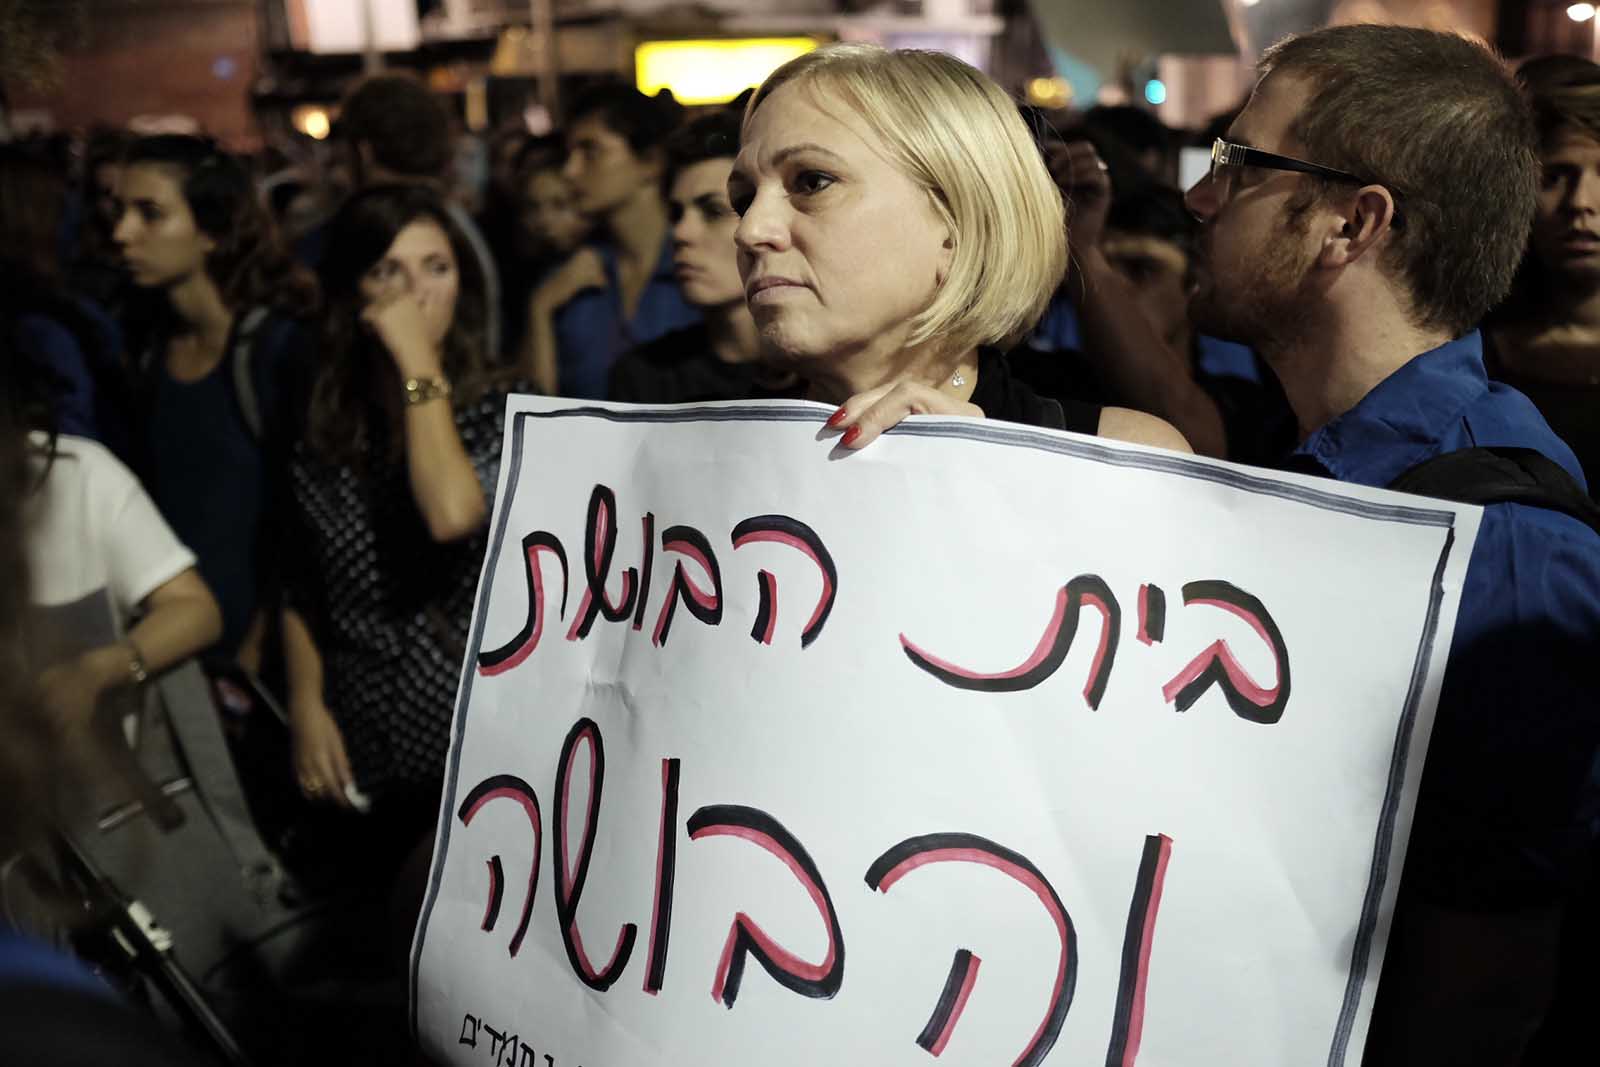 אנשים מפגינים מול מועדון אלנבי 40 בתל אביב לאחר פרסום סרטון הוידאו של אונס של נערה במועדון (צילום: תומר ניוברג/ פלאש 90)